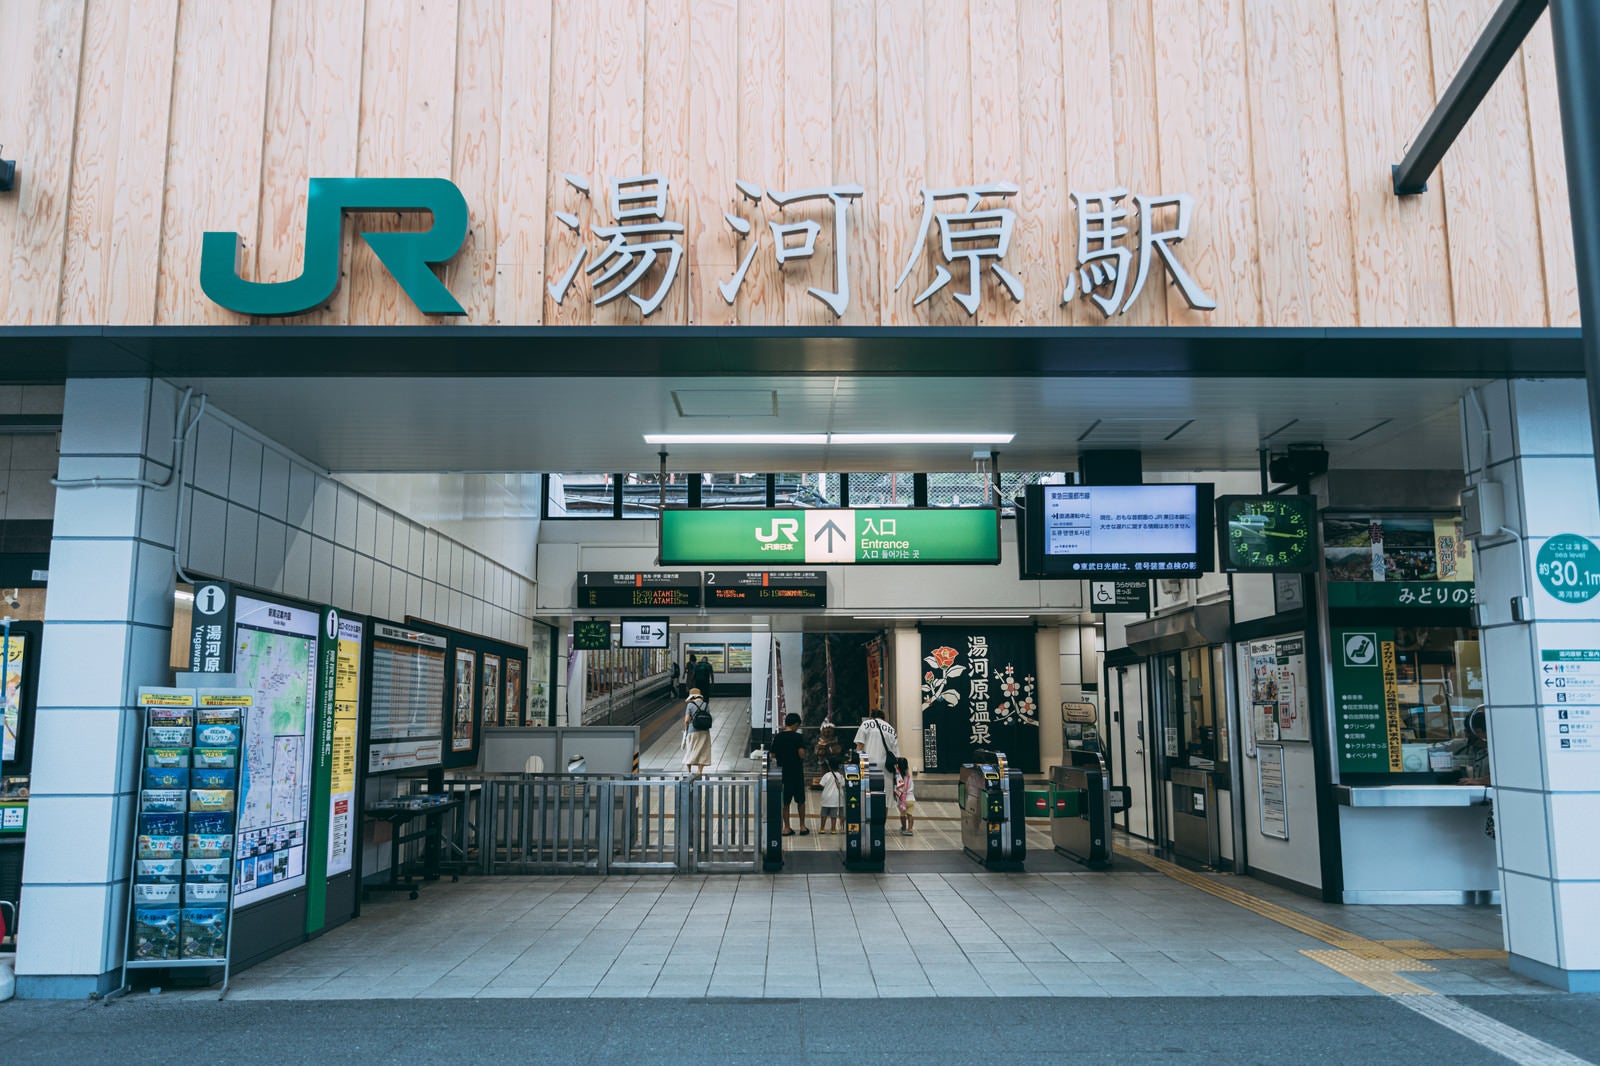 「JR湯河原駅」の写真